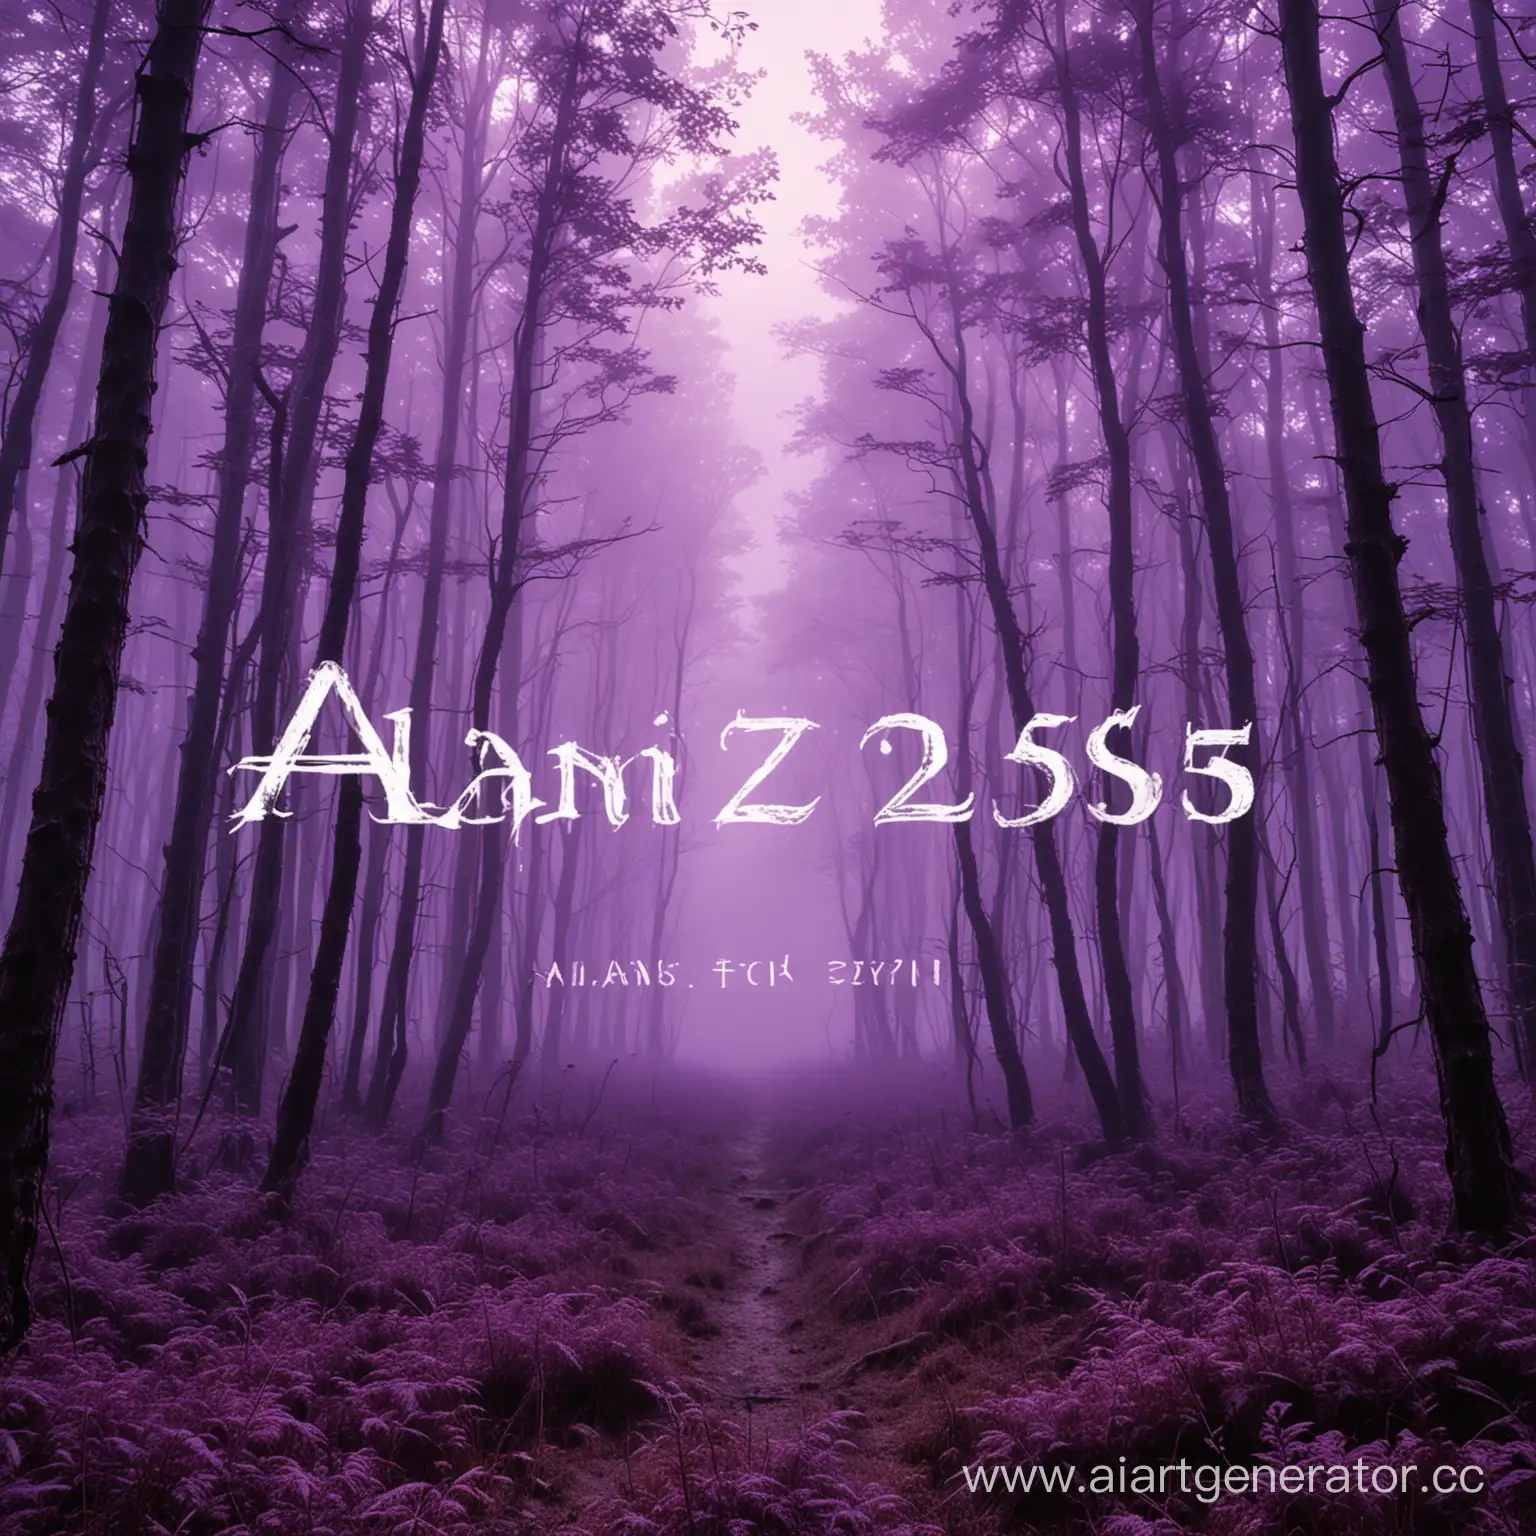 тёмный фиолетовый лес с густым фиолетовым туманом и с текстом ALANZ2559 по середине